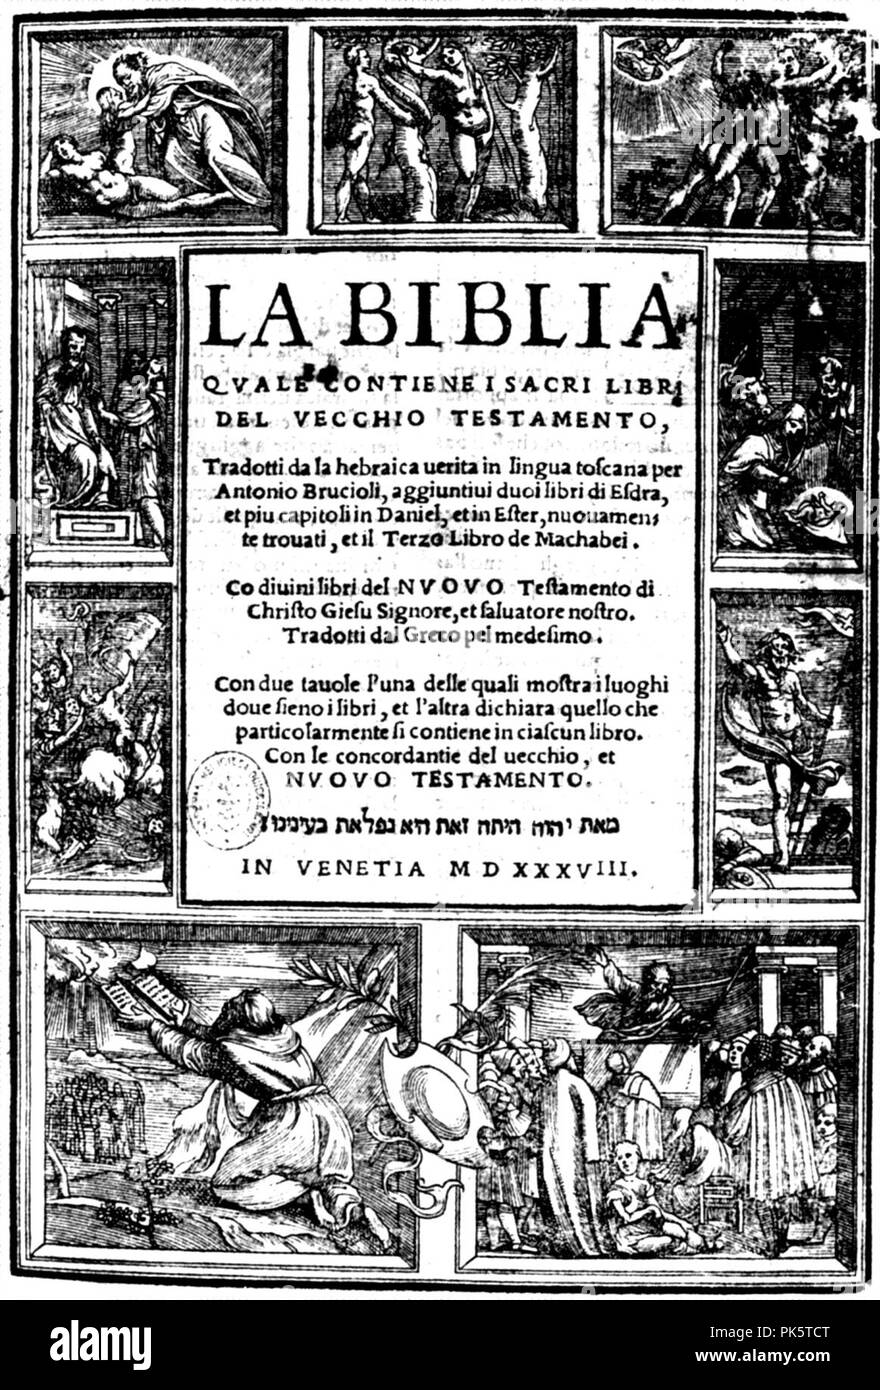 Bibbia-Brucioli. Stock Photo